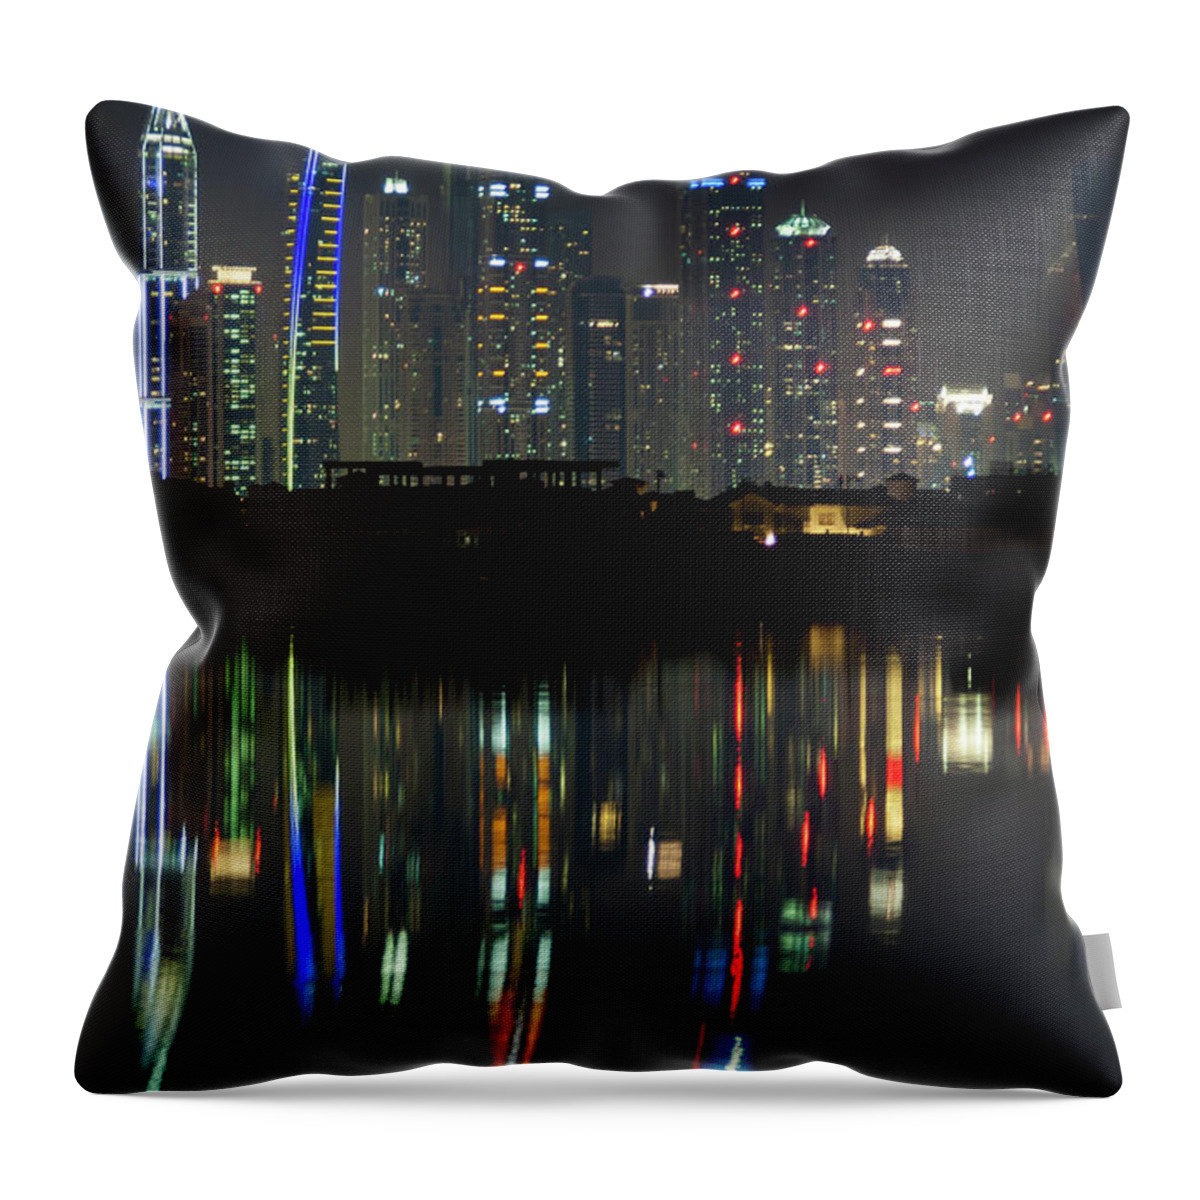 Dubai Throw Pillow featuring the photograph Dubai city skyline nighttime by Andy Myatt